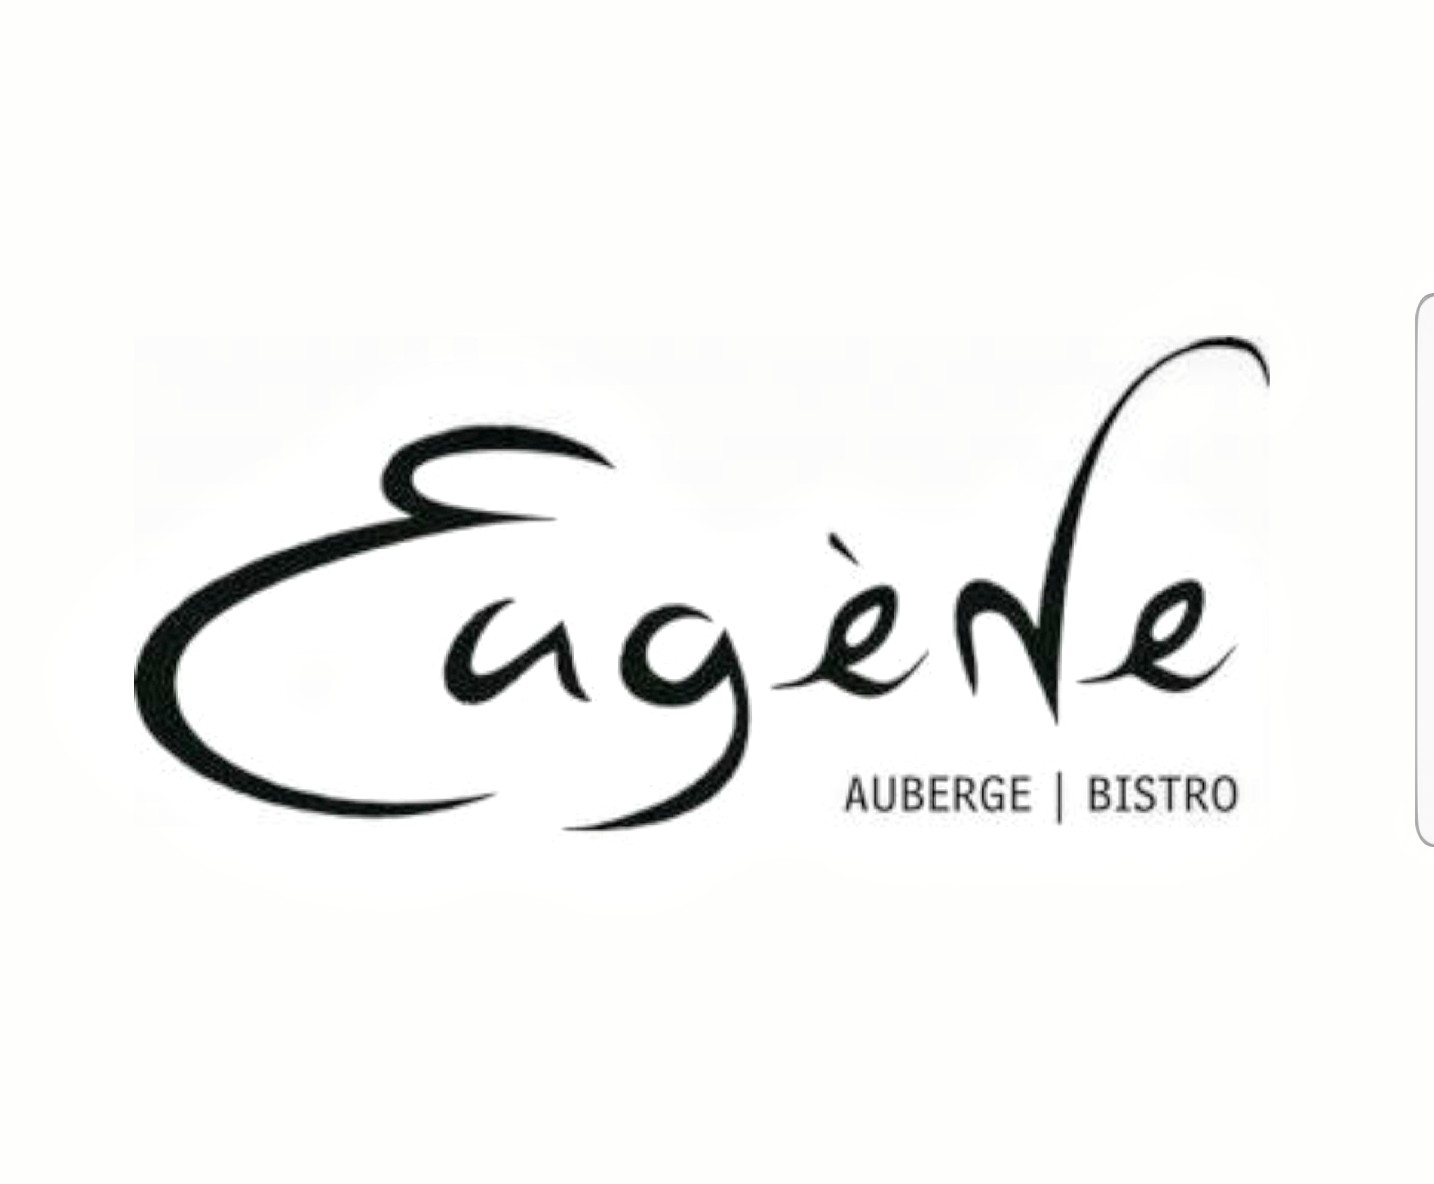 Eugène Auberge